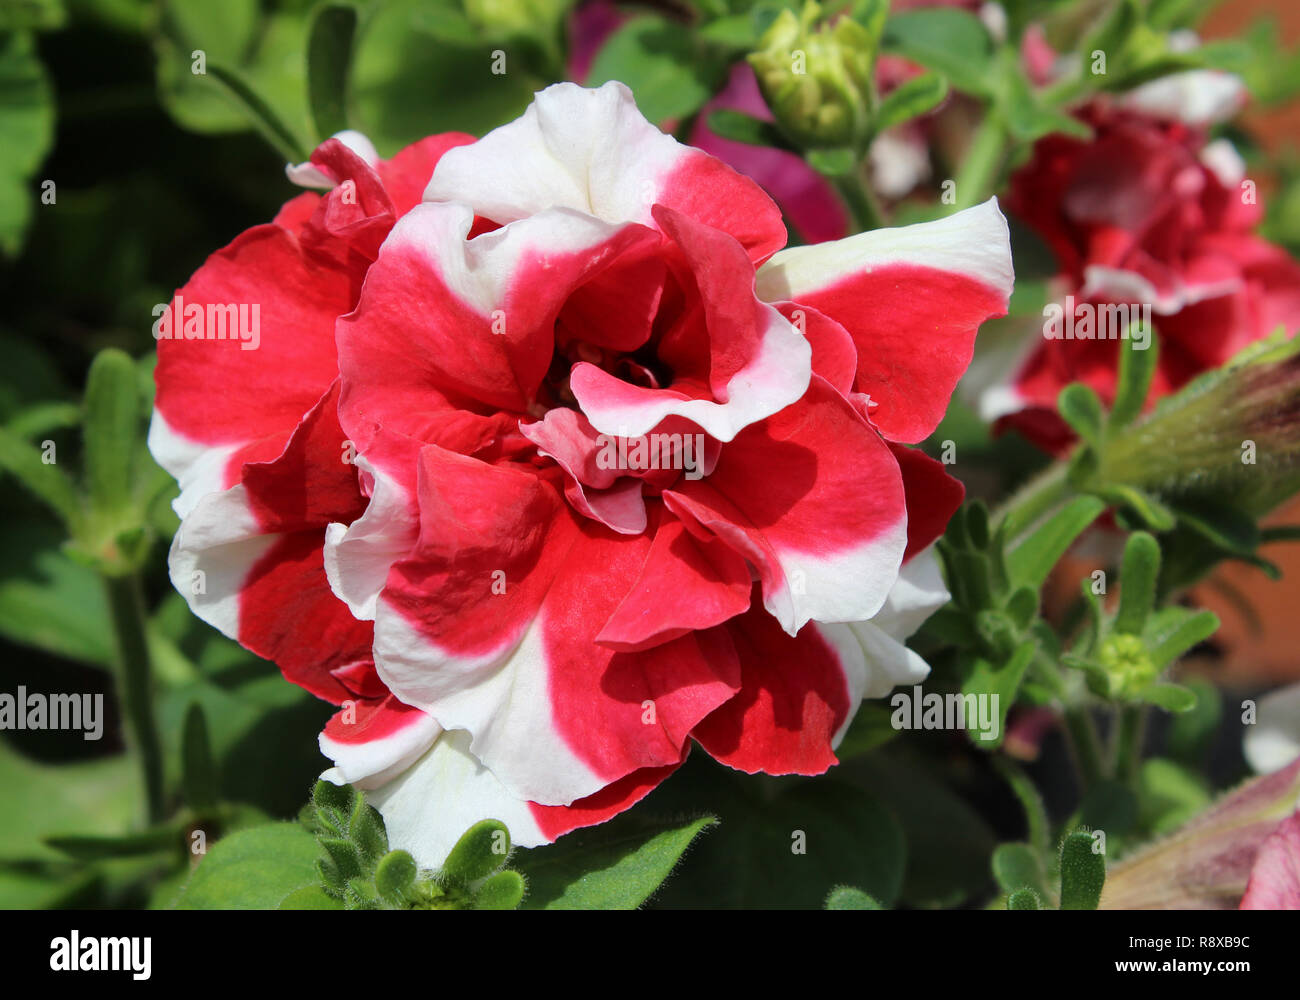 Schöne farbenprächtige, rot-weiß gestreifte Doppel Petunia Blume. Stockfoto